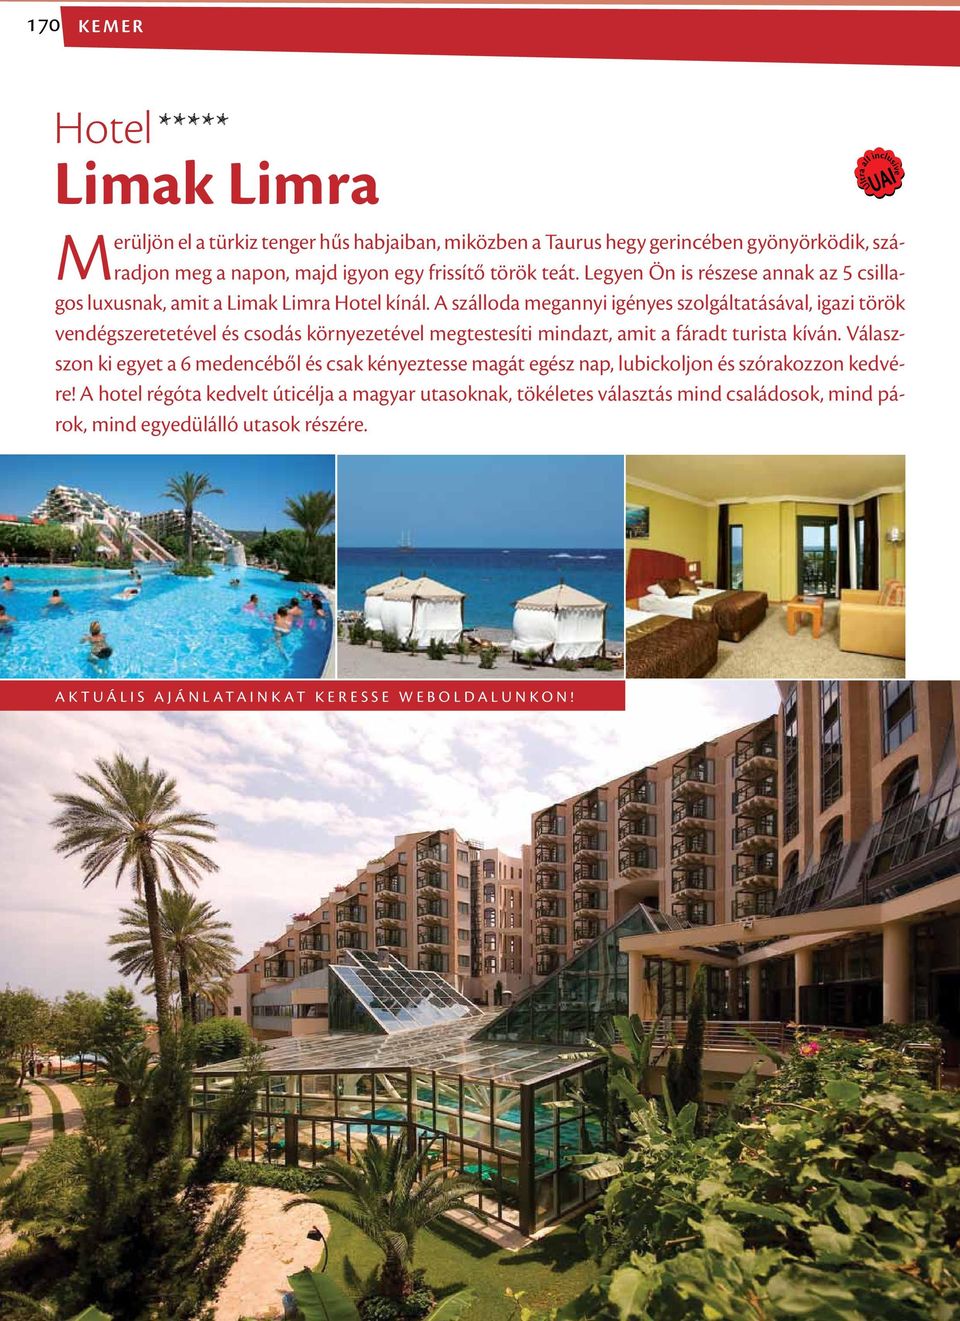 A szálloda megannyi igényes szolgáltatásával, igazi török vendégszeretetével és csodás környezetével megtestesíti mindazt, amit a fáradt turista kíván.